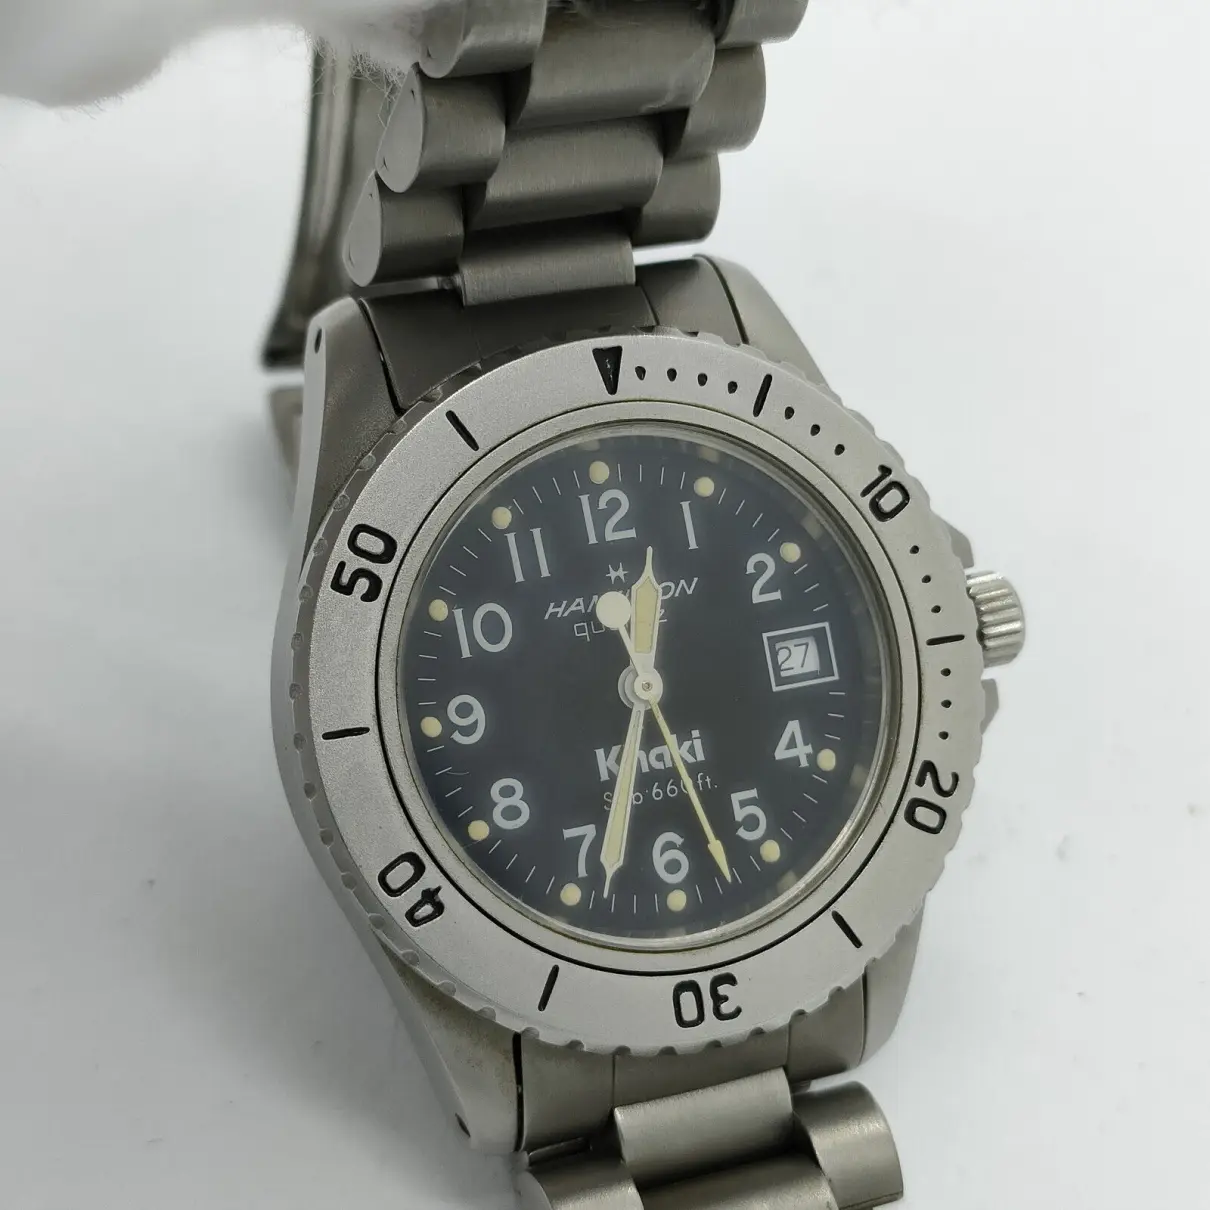 Buy Hamilton Silver watch online